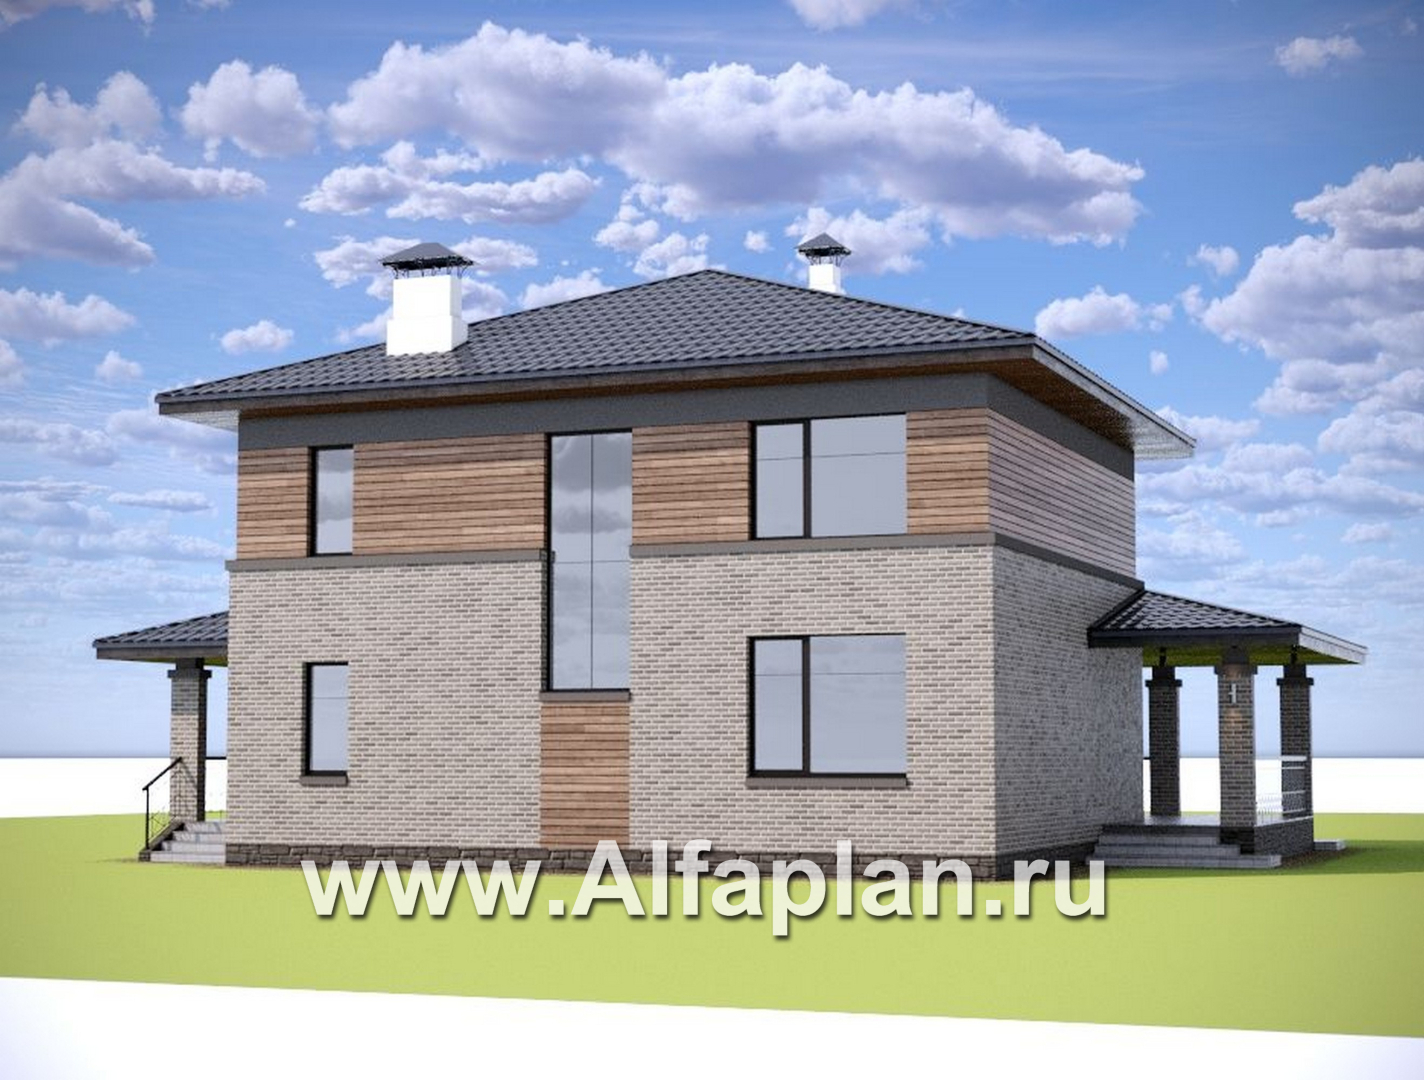 Проекты домов Альфаплан - "Компас" - проект двухэтажного коттеджа, план дома со вторым светом и террасой, в стиле Райта - дополнительное изображение №2